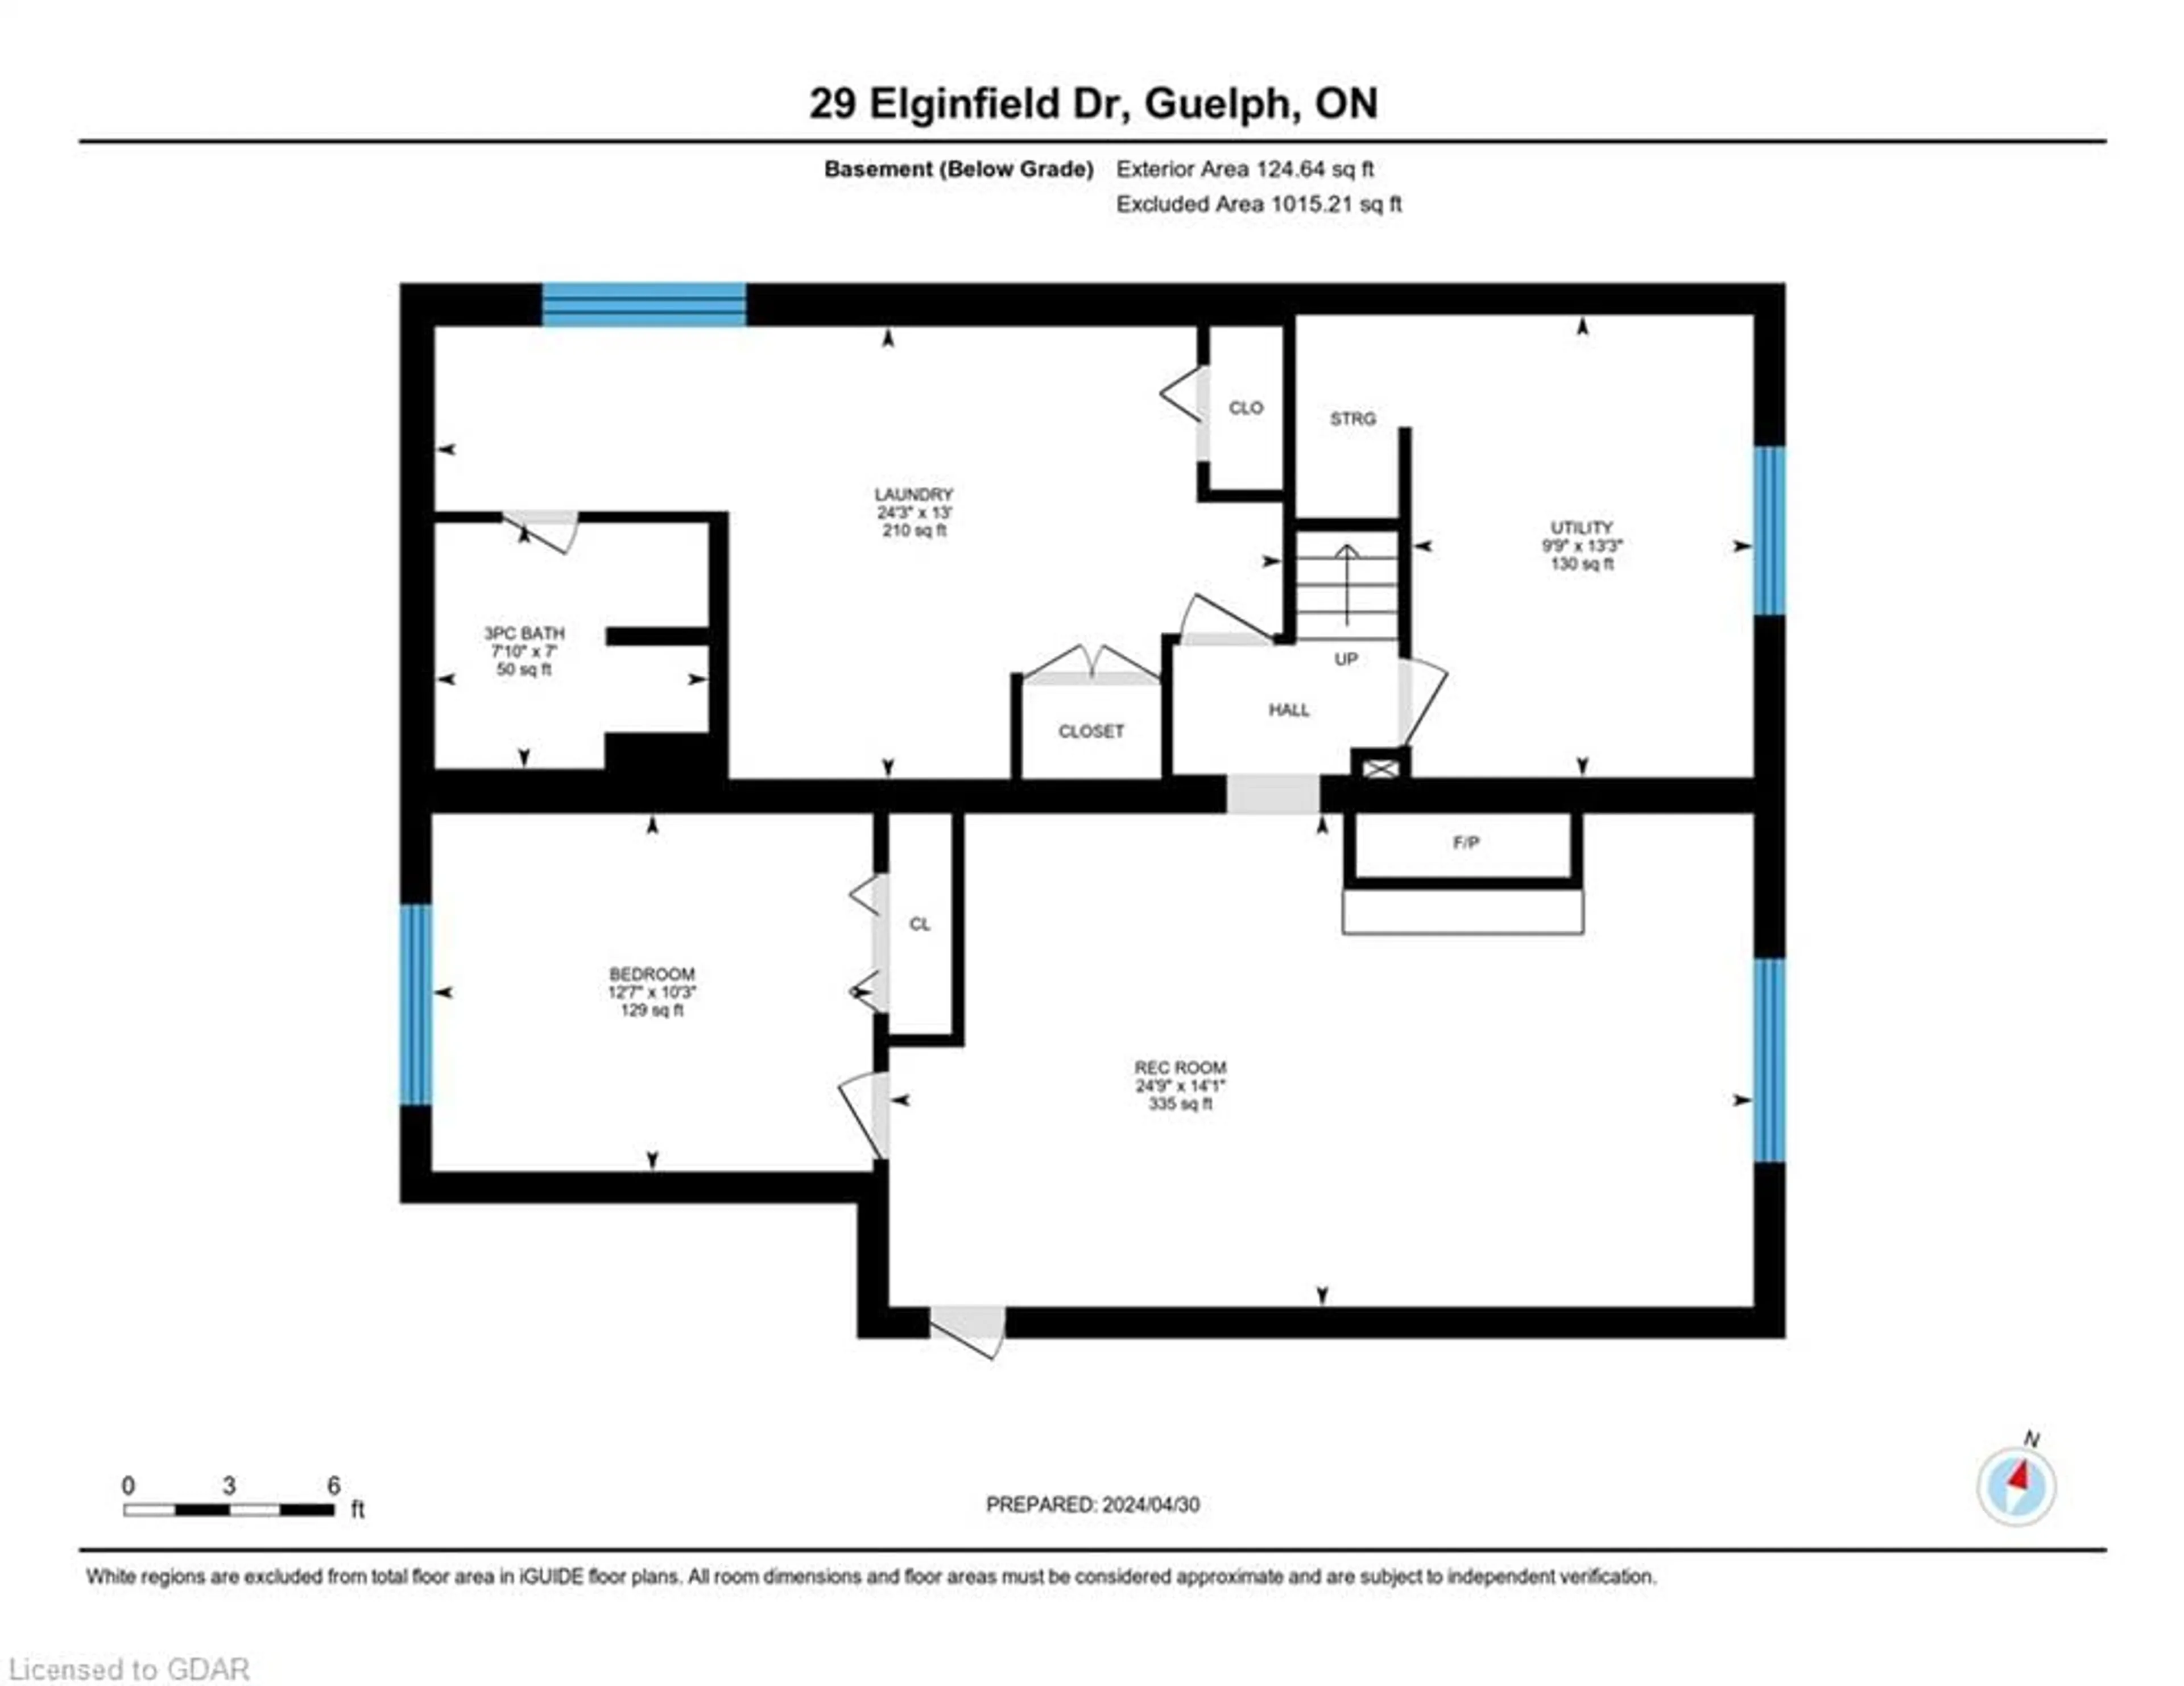 Floor plan for 29 Elginfield Dr, Guelph Ontario N1E 4E5